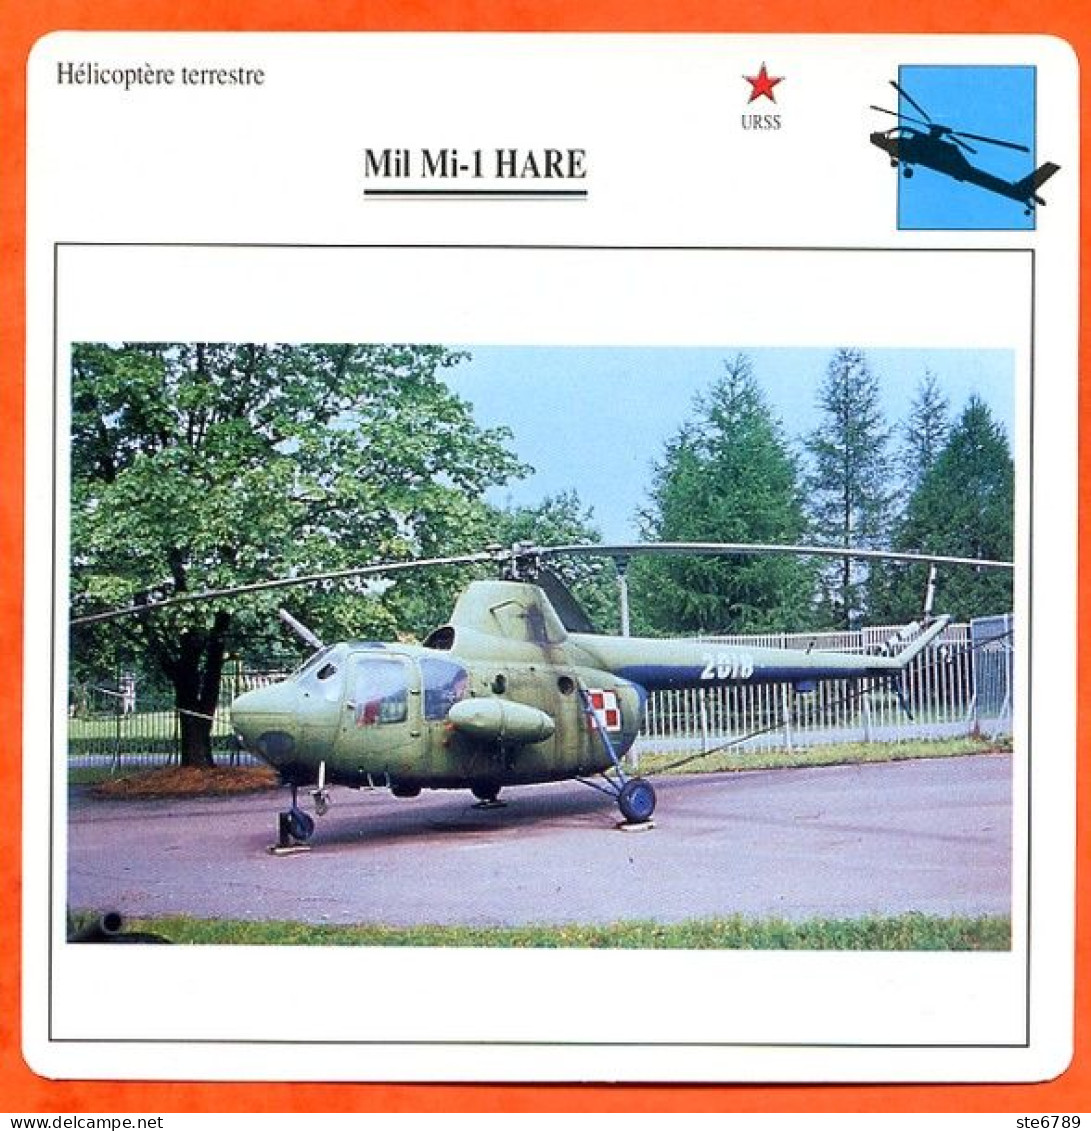 Fiche Aviation Mil Mi 1 HARE / Hélicoptère Terrestre URSS Avions - Flugzeuge